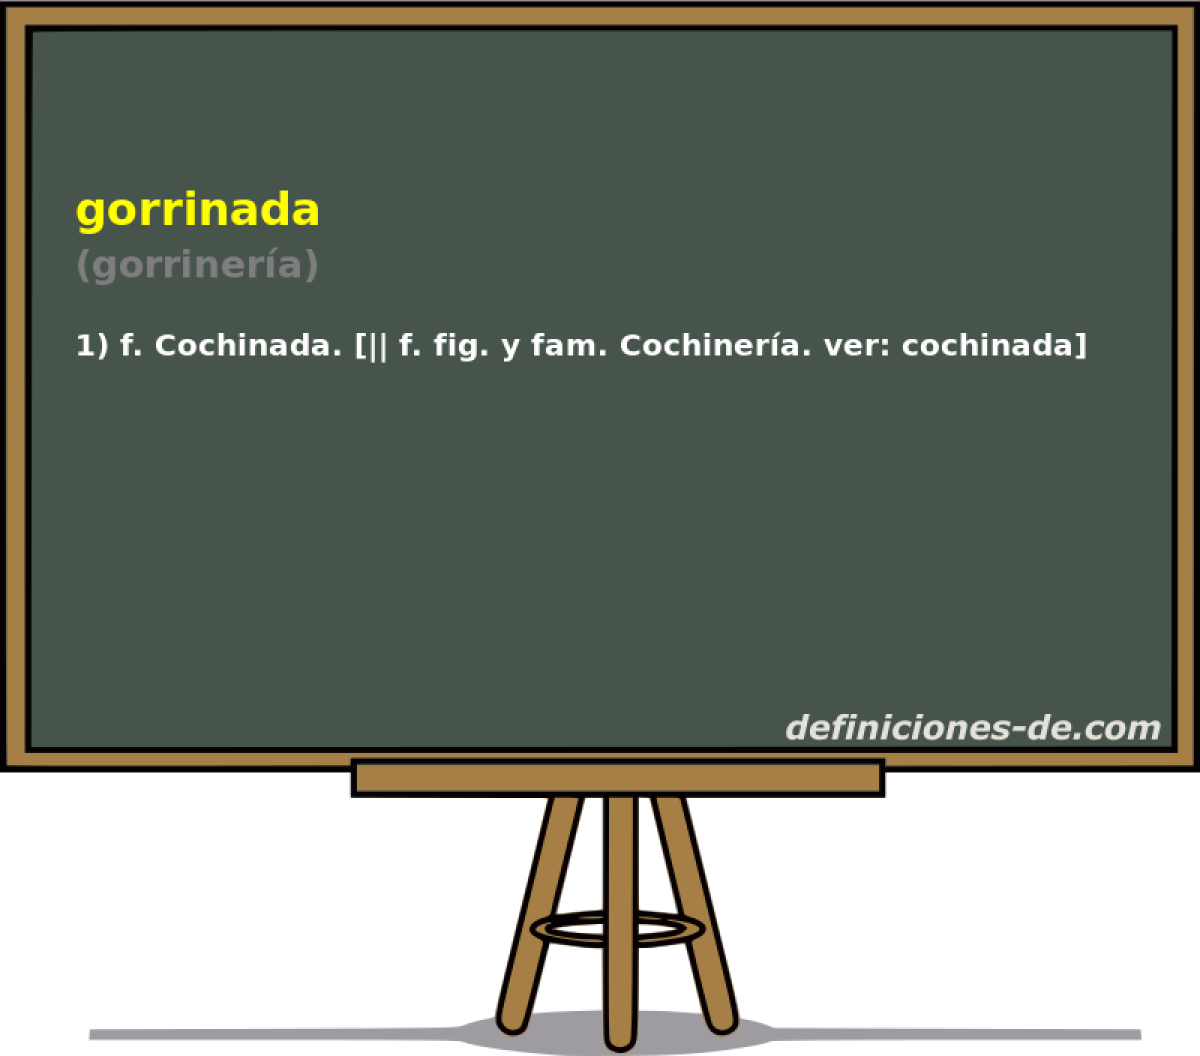 gorrinada (gorrinera)